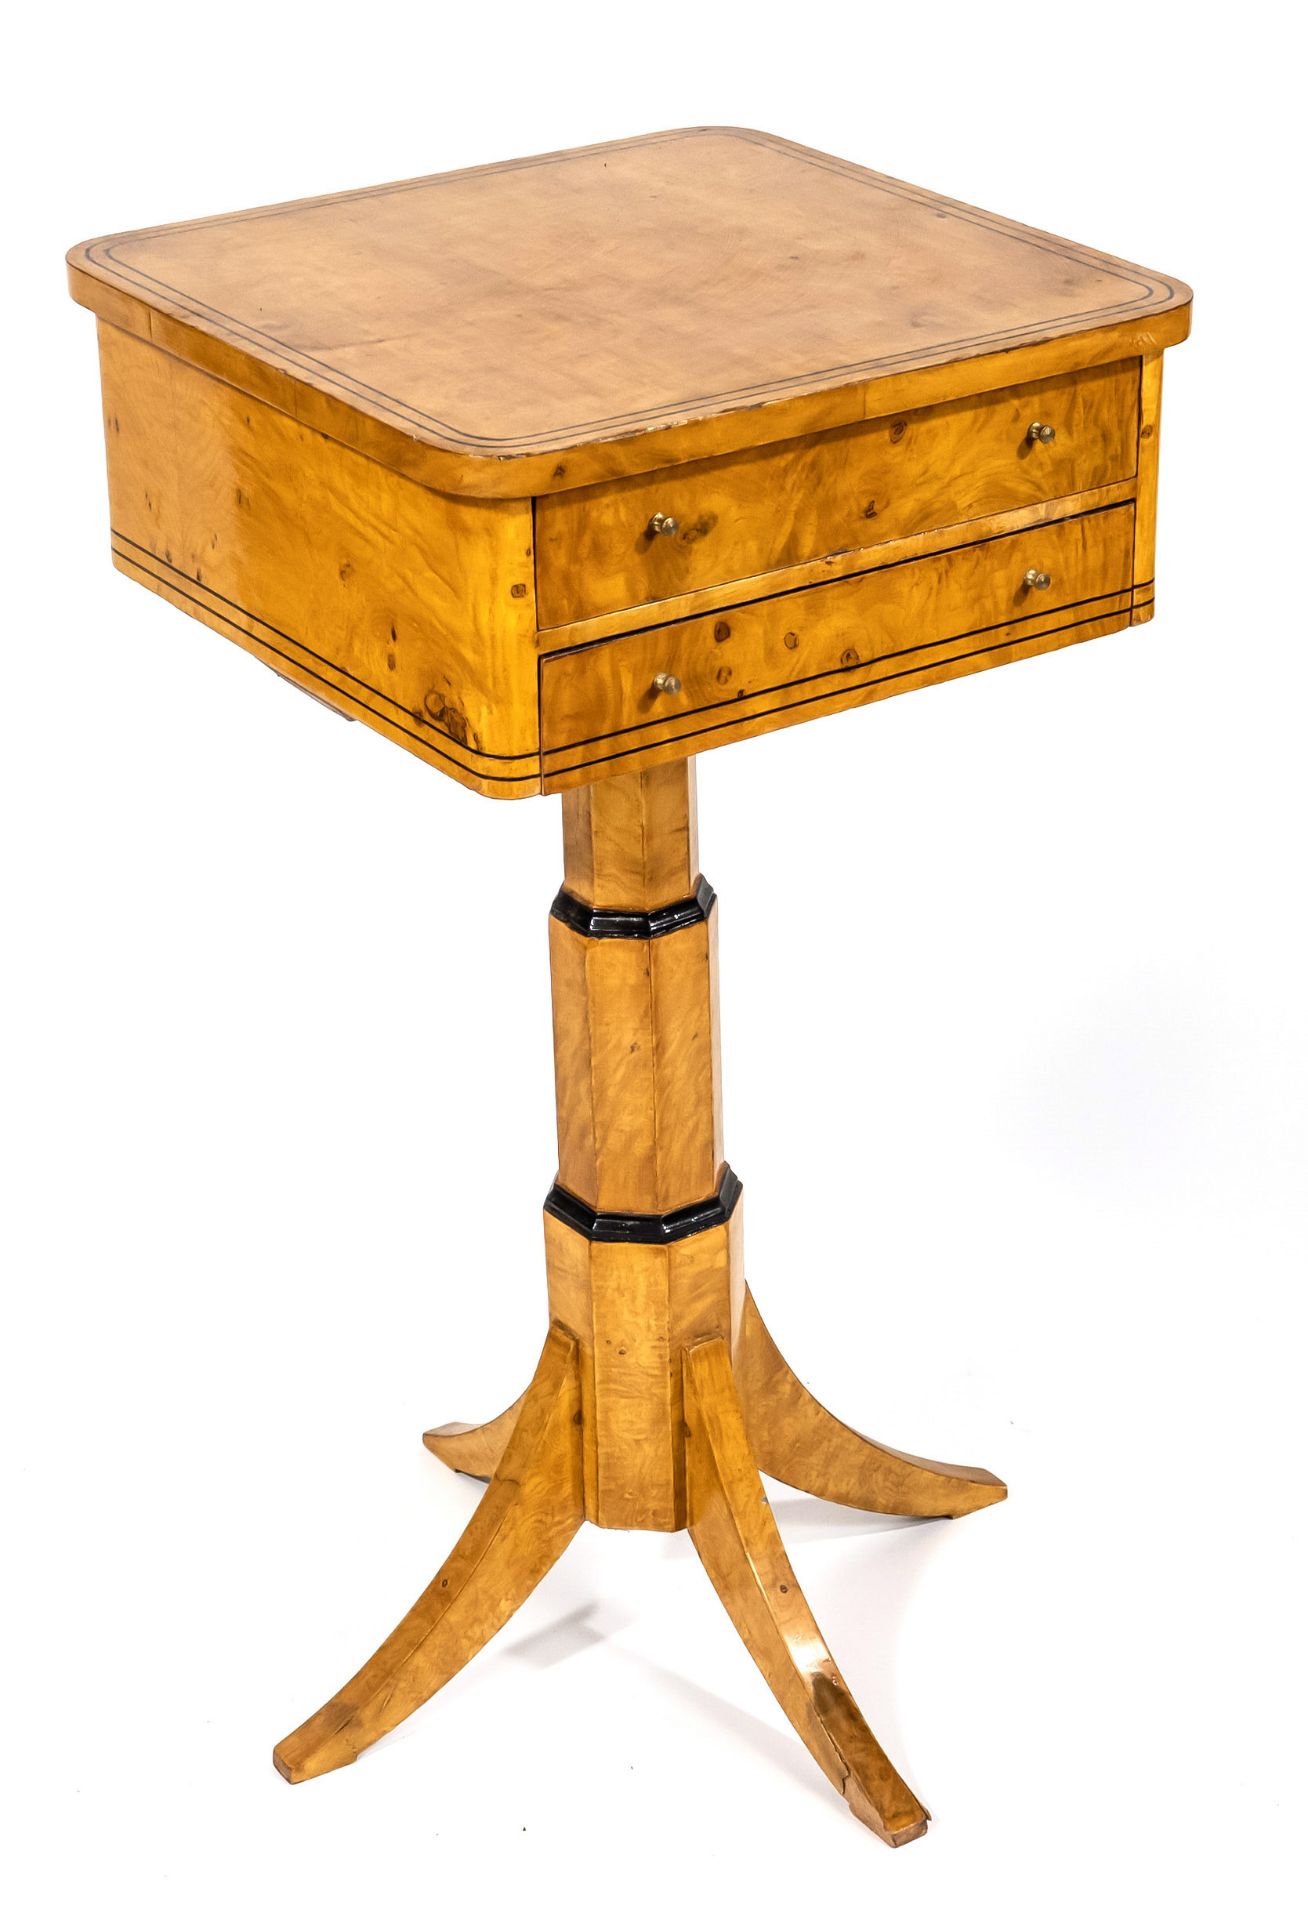 Biedermeier style needlework/sewing table, late 20th century, burl maple veneer, 86 x 45 x 46